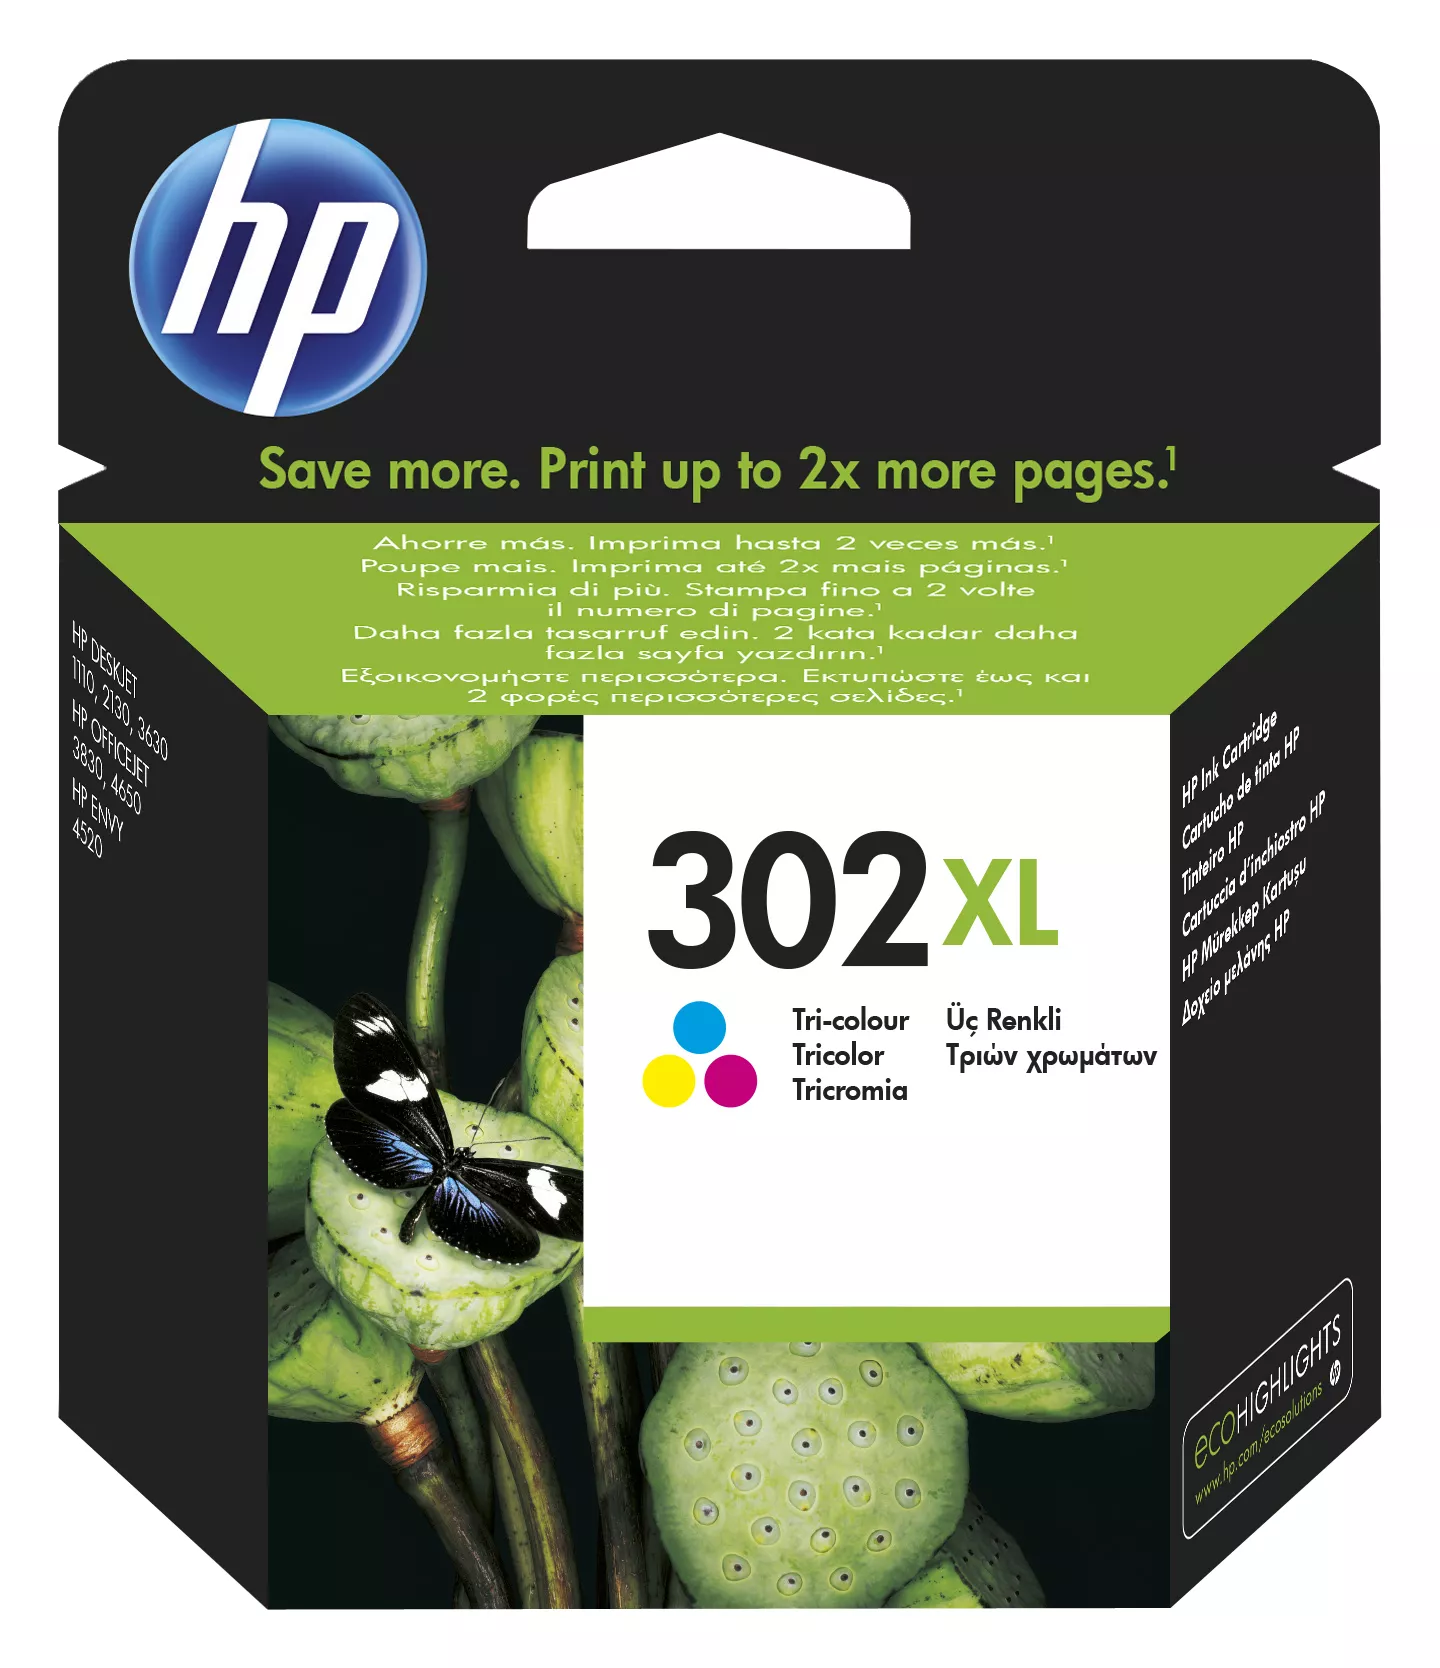 Vente HP 302XL original Tri-color Ink cartridge F6U67AE 301 HP au meilleur prix - visuel 2